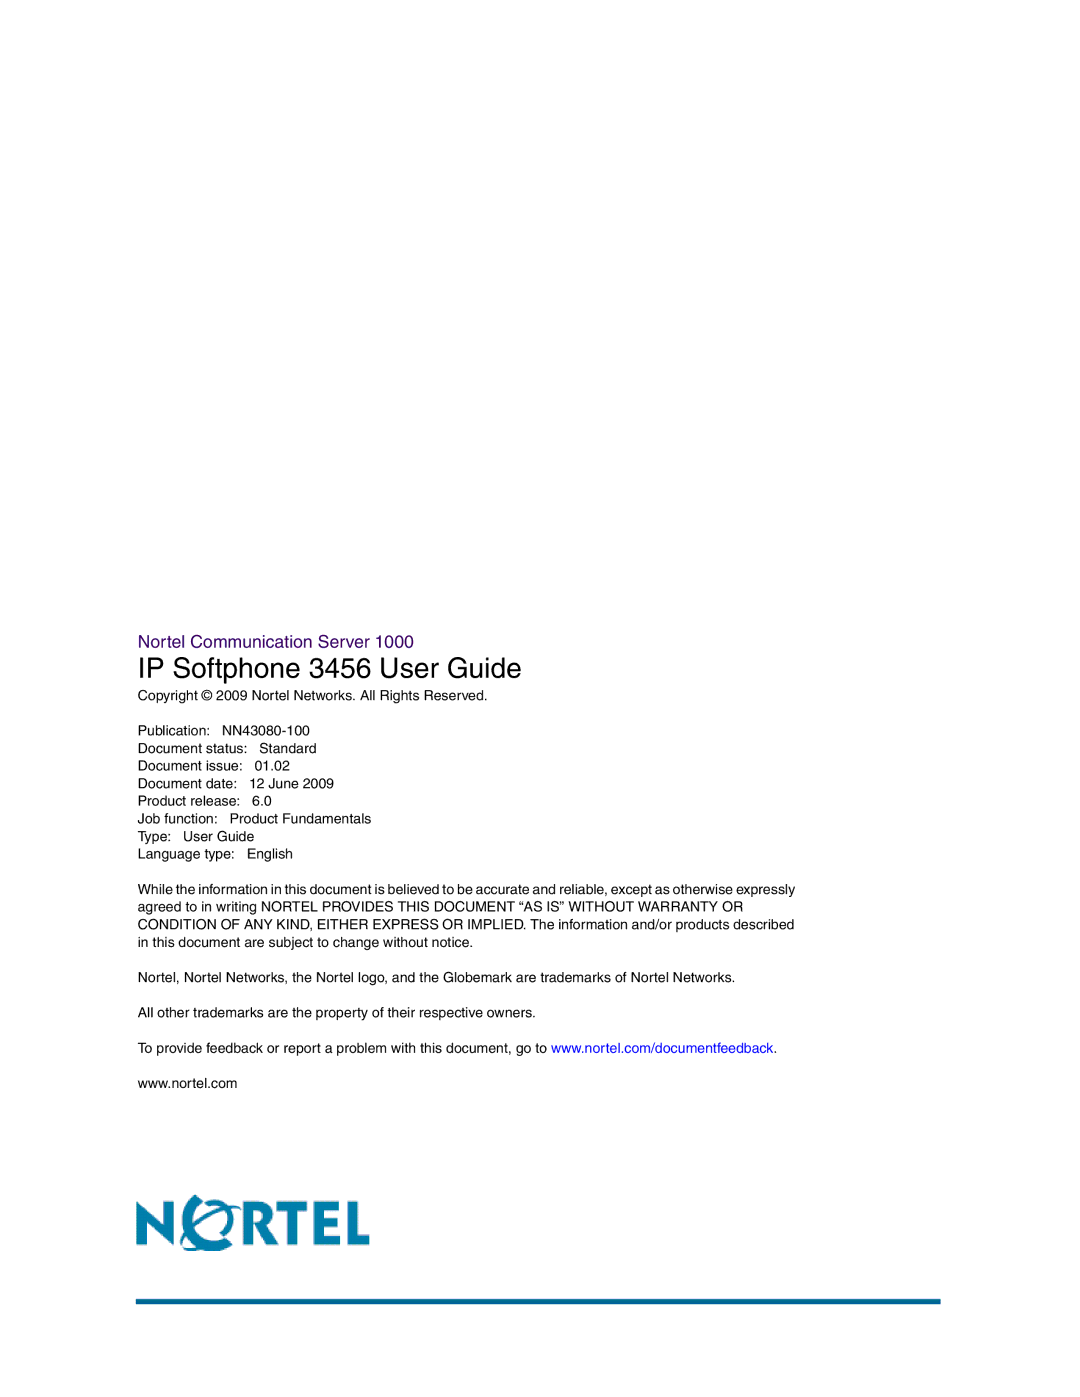 Nortel Networks NN43080-100 manual IP Softphone 3456 User Guide 